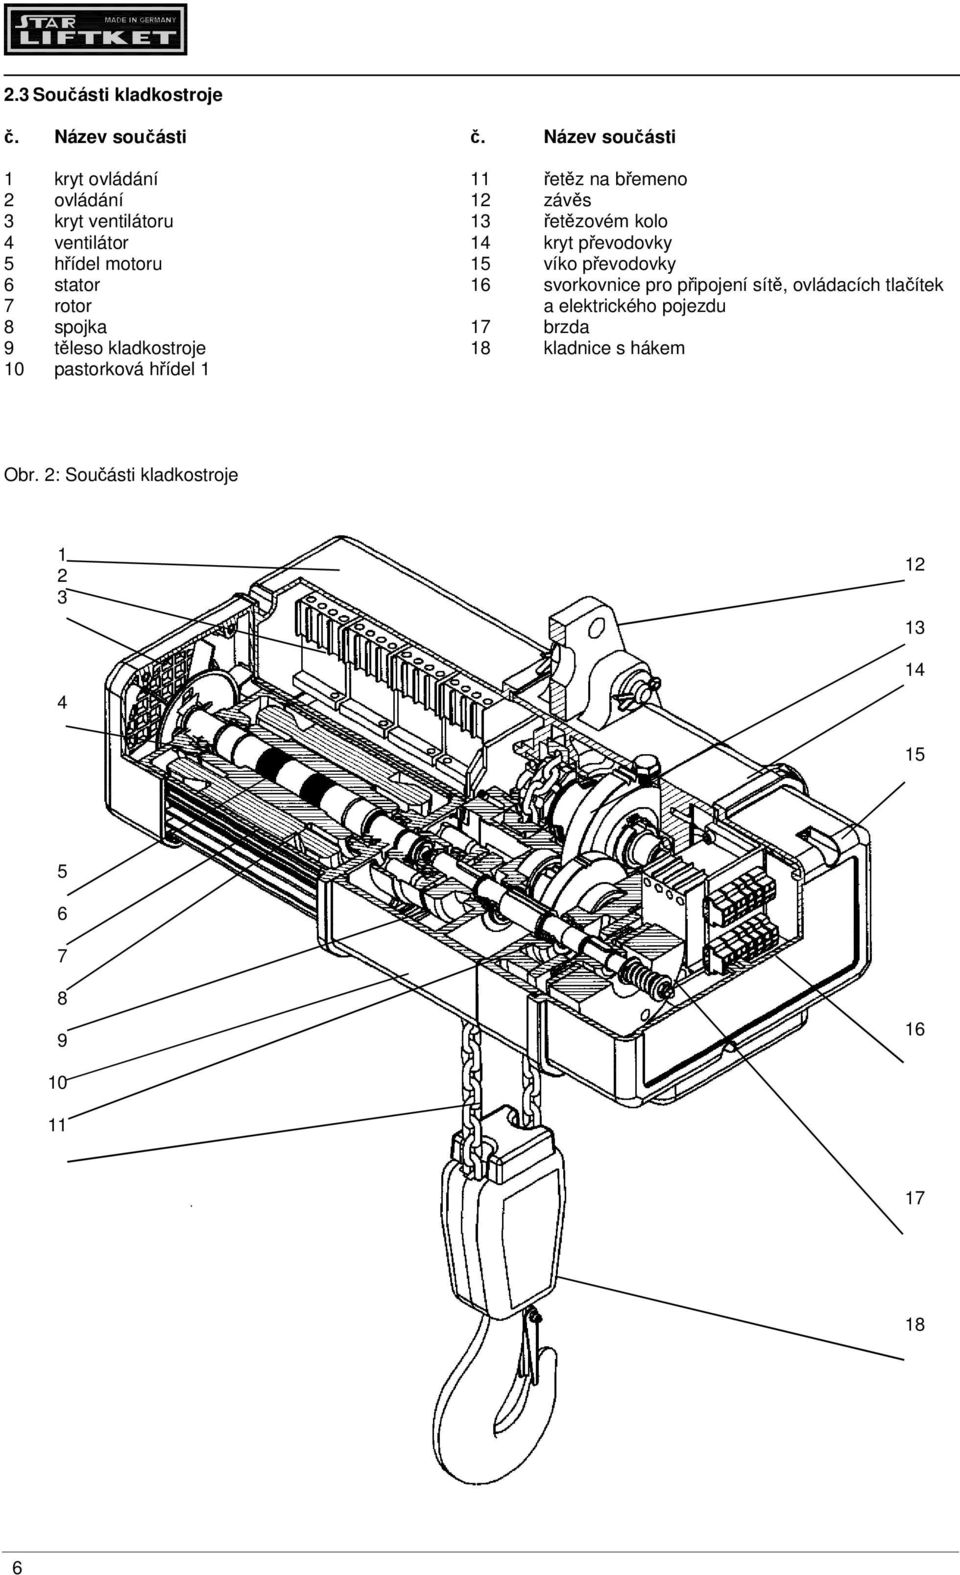 ventilátor 14 kryt převodovky 5 hřídel motoru 15 víko převodovky 6 stator 16 svorkovnice pro připojení sítě,